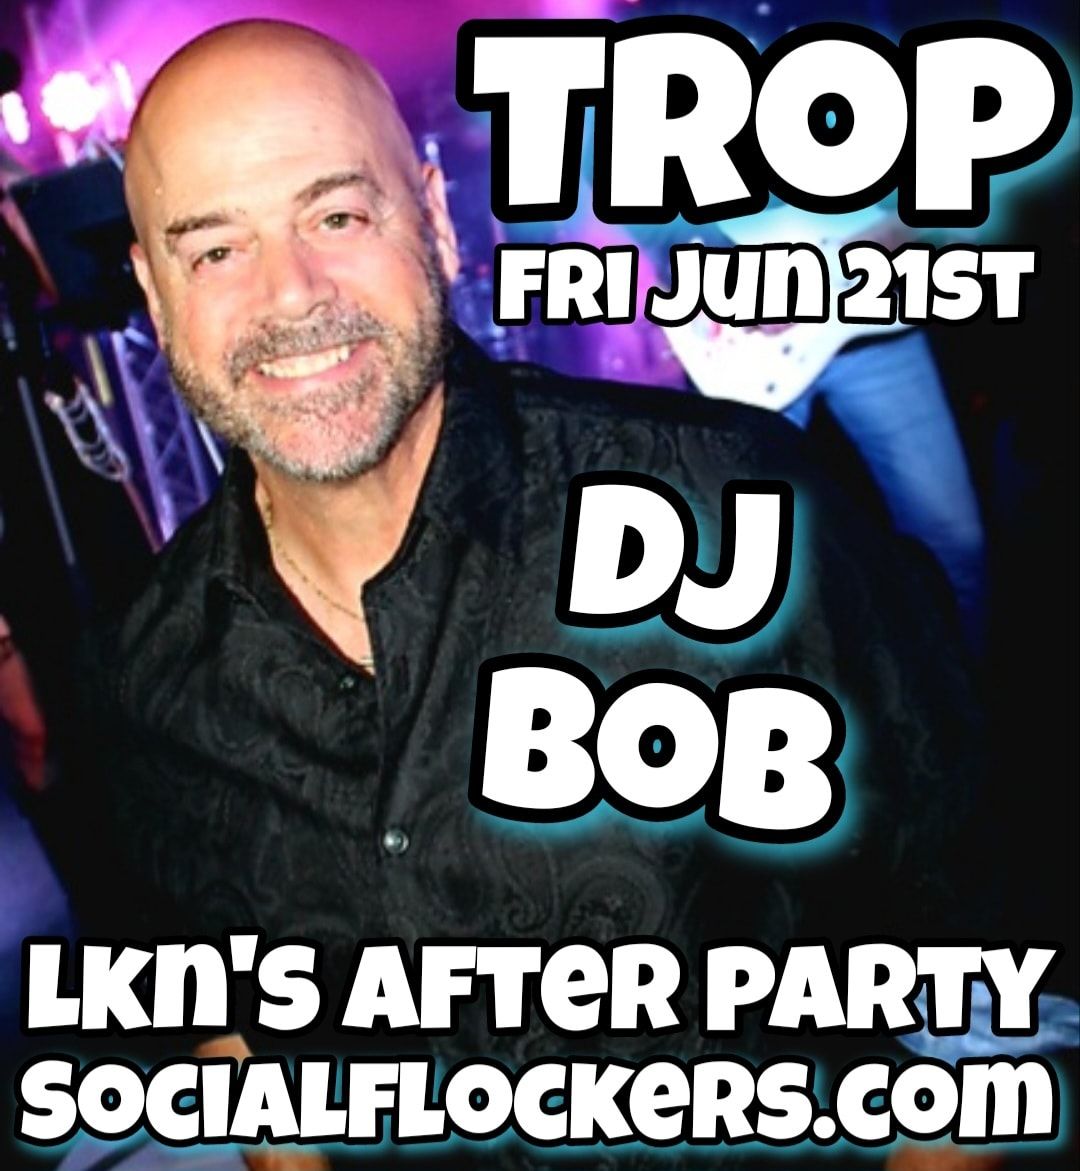 TROP - DJ BOB - LKN'S AFTER PARTY 